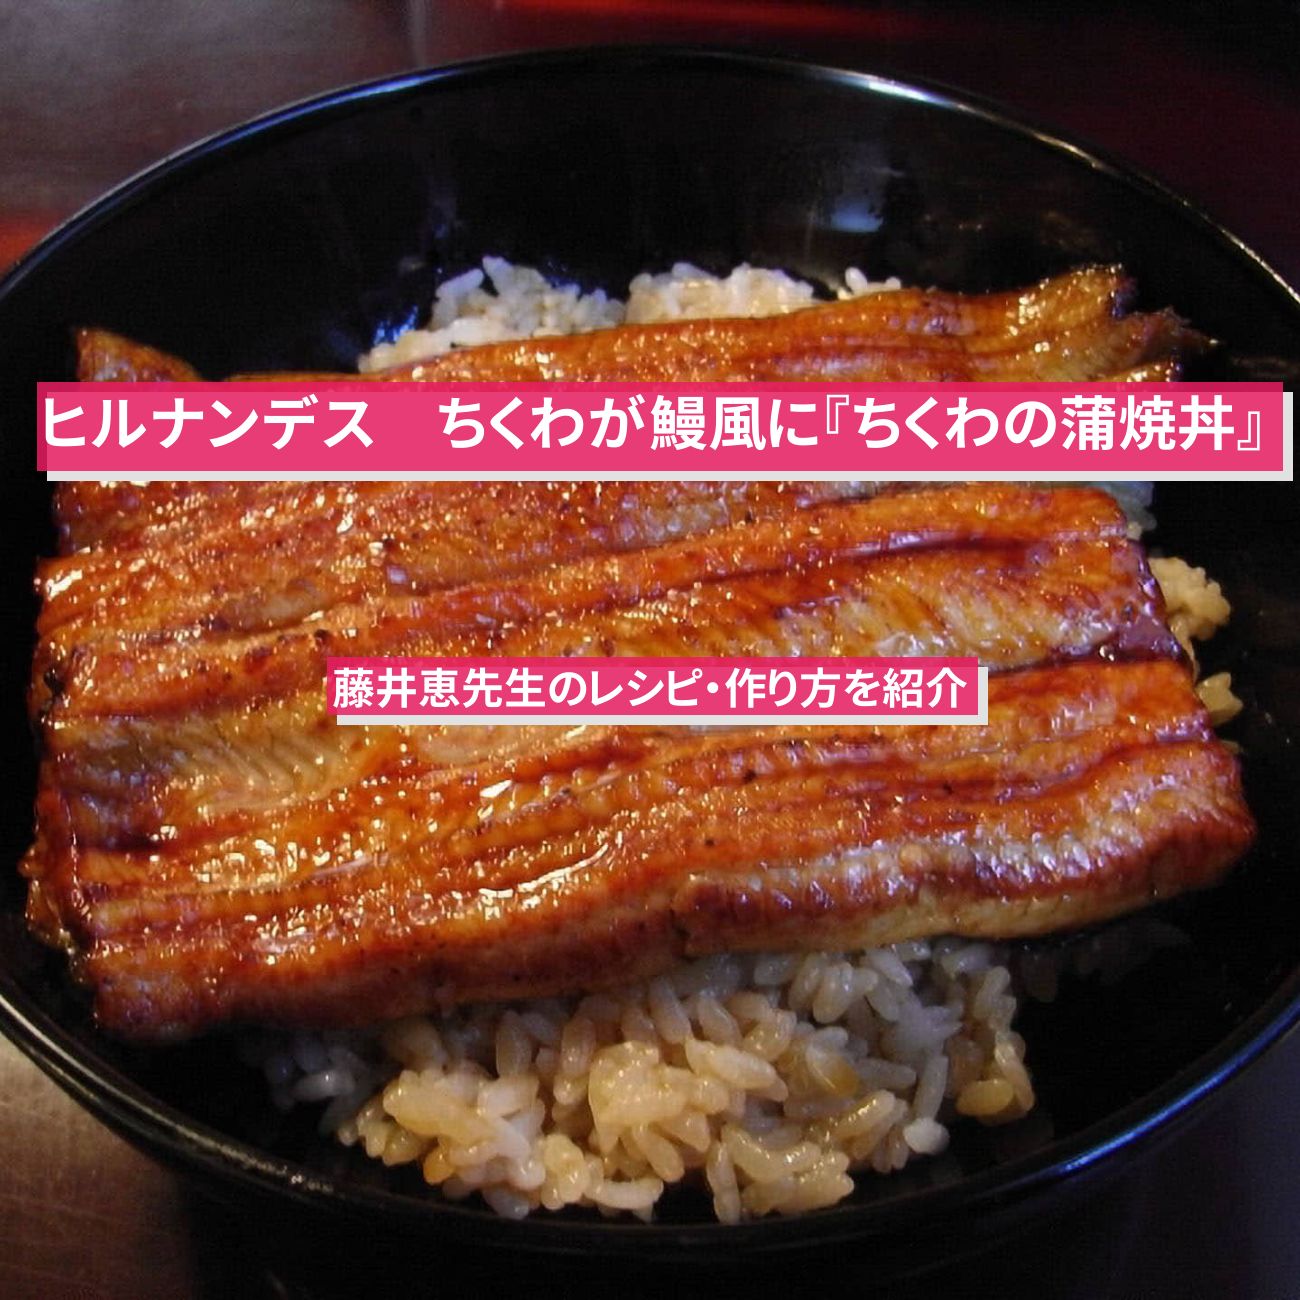 【ヒルナンデス】ちくわが鰻風に『ちくわの蒲焼丼』藤井恵先生のレシピ・作り方を紹介